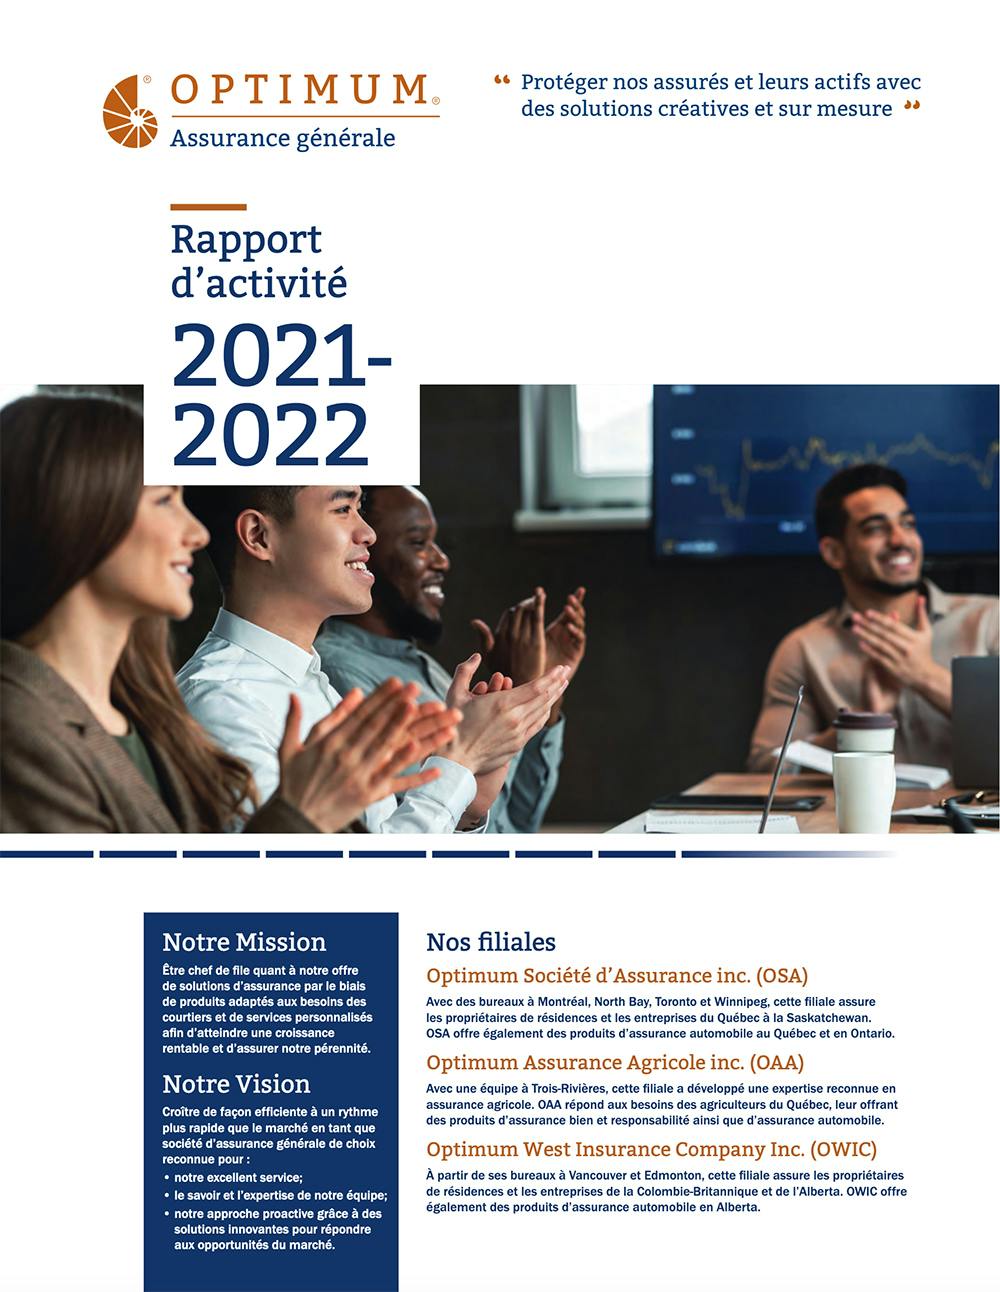 OGI - Rapport d'activité 2022-2021